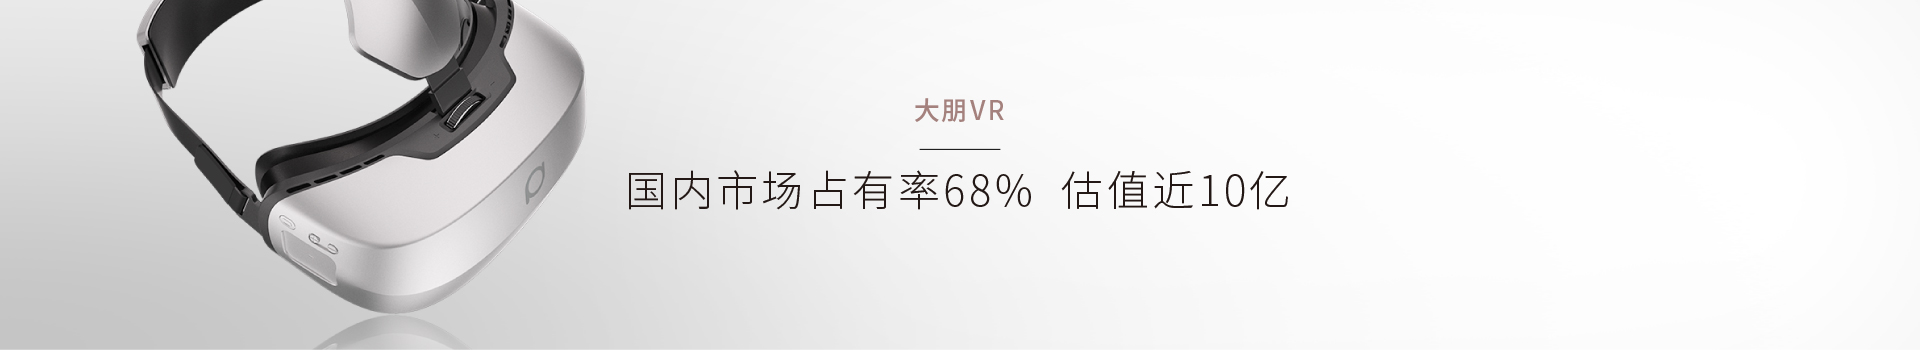 大朋VR經典營銷案例